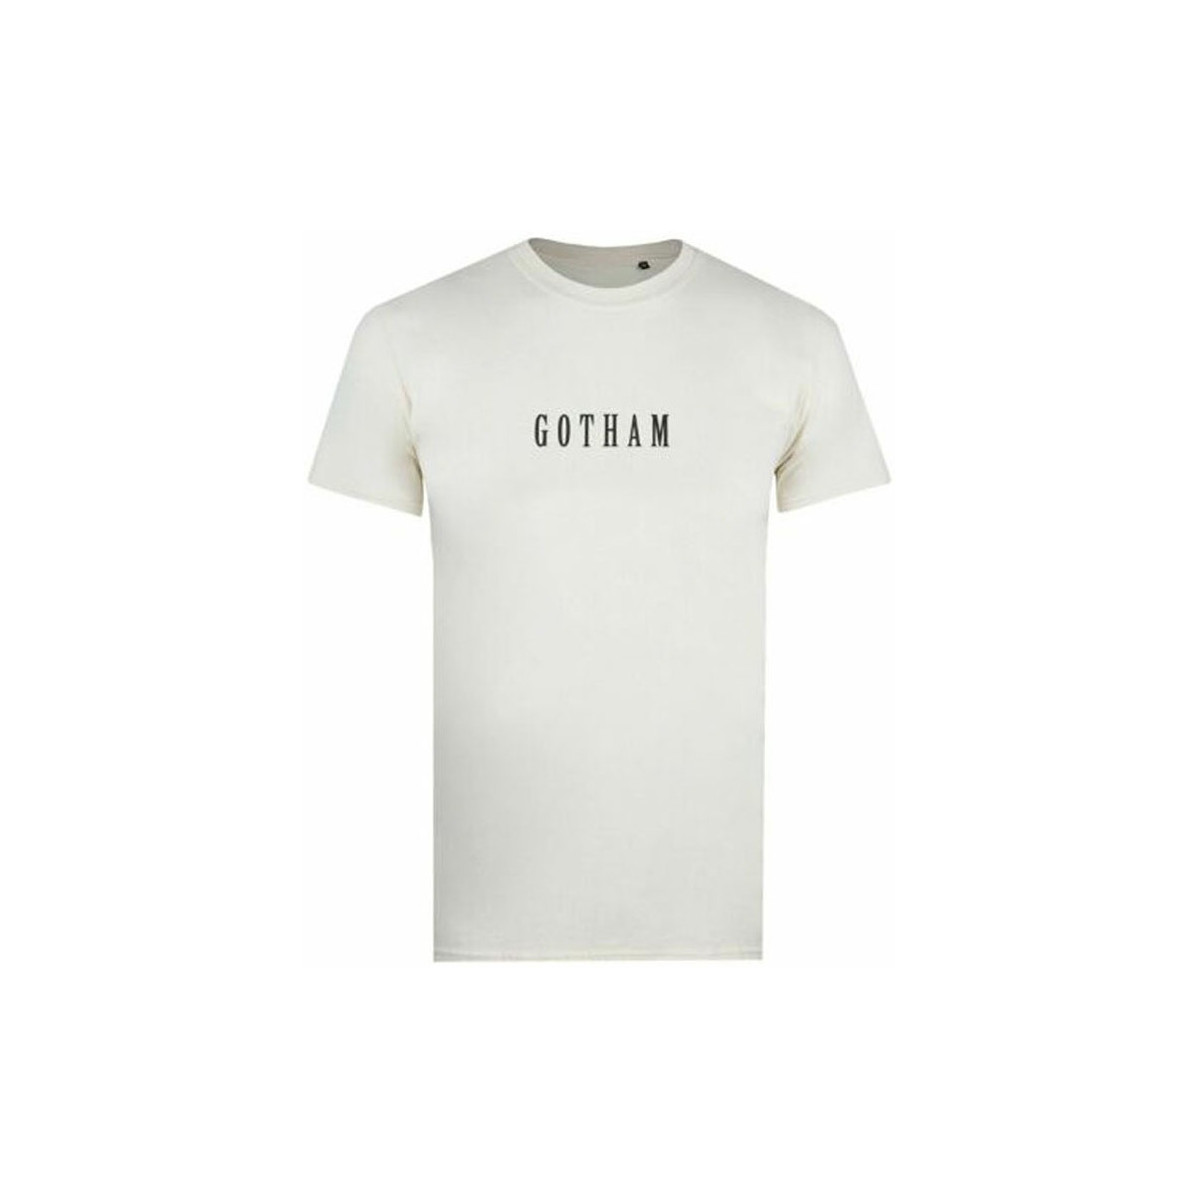 Vêtements Homme T-shirts manches longues Dessins Animés Gotham Beige